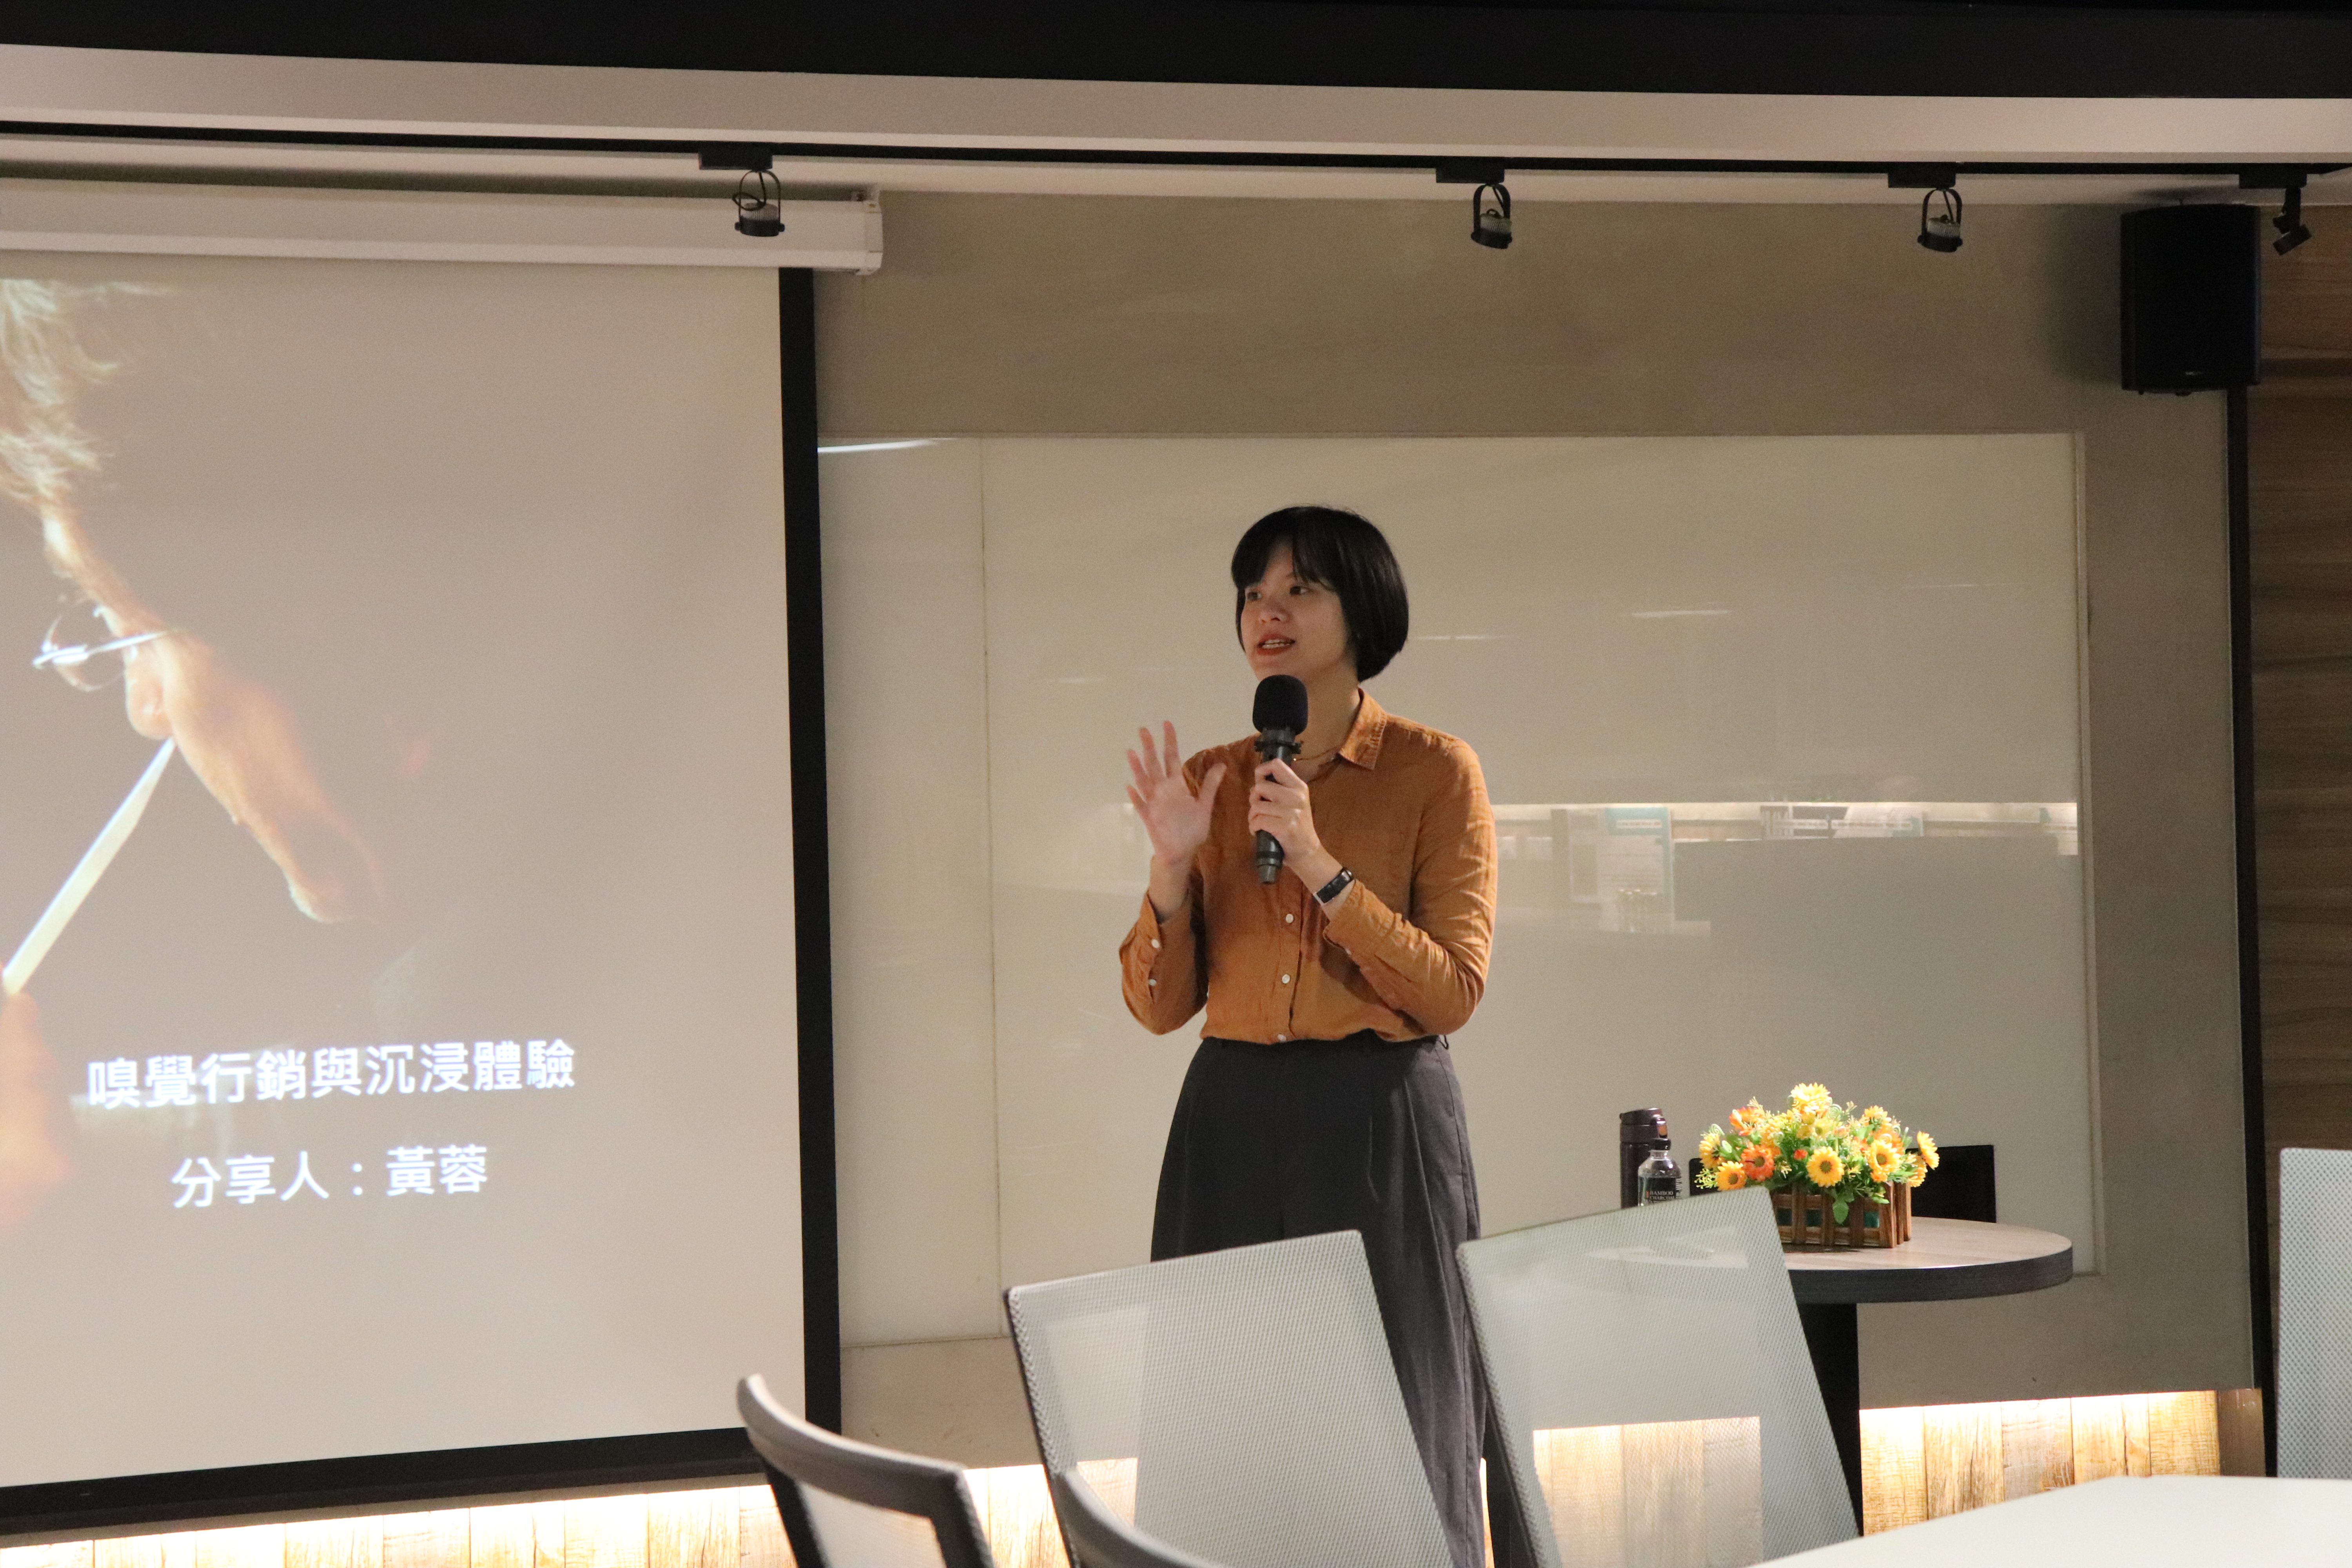  Smells of Taipei創辦人黃蓉主講「嗅覺行銷與沉浸體驗」，分享如何將嗅覺應用在行銷體驗活動的策劃經驗